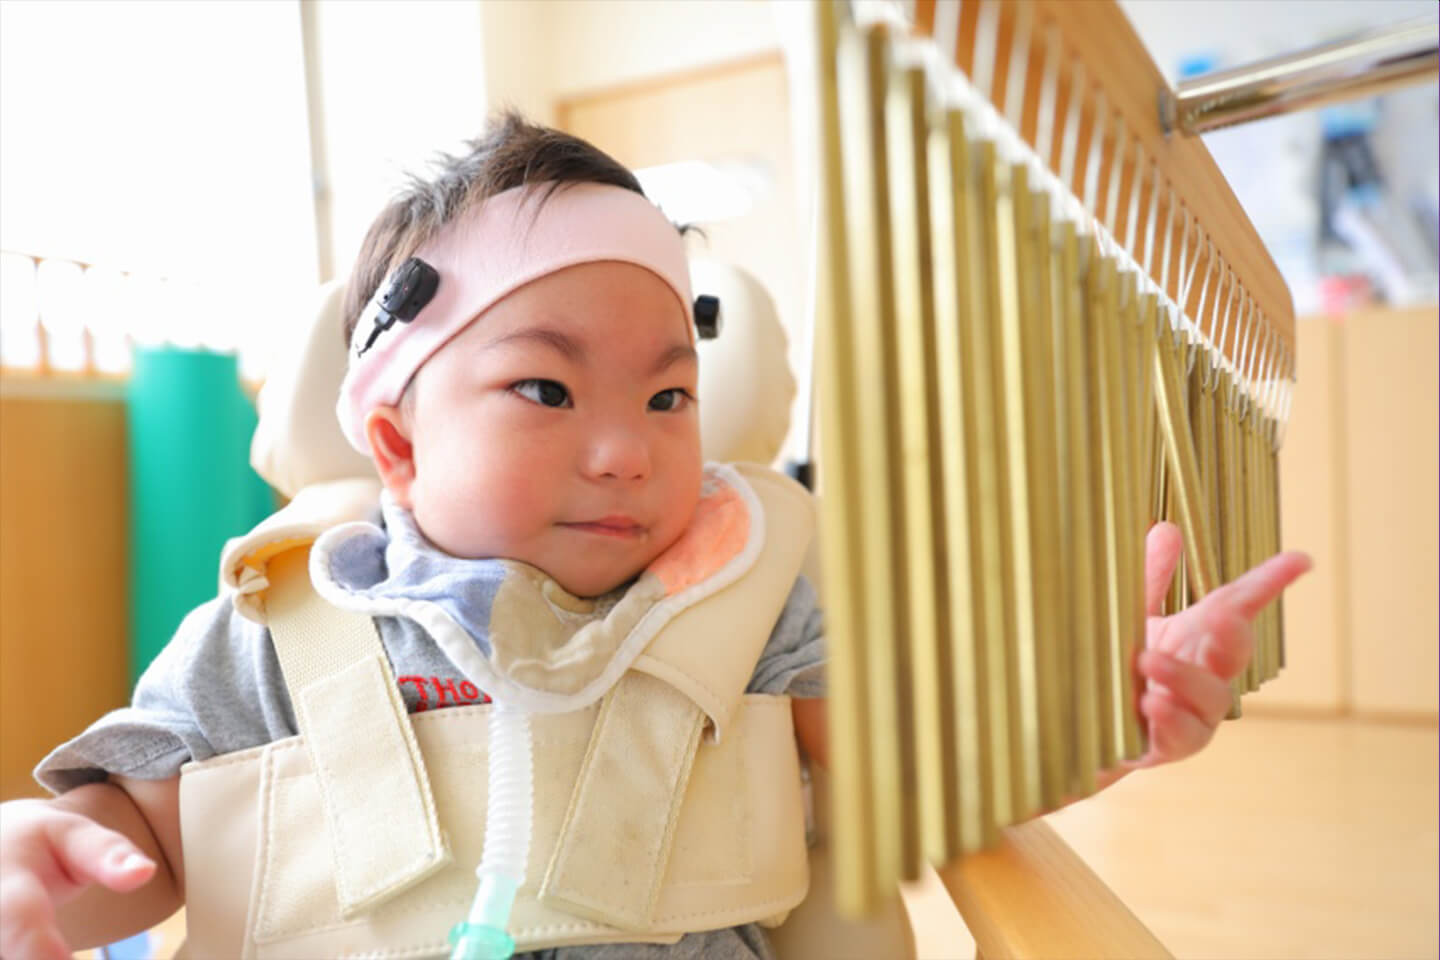 日本初の障害児専門の保育園 障害児保育園ヘレン 認定npo法人フローレンス